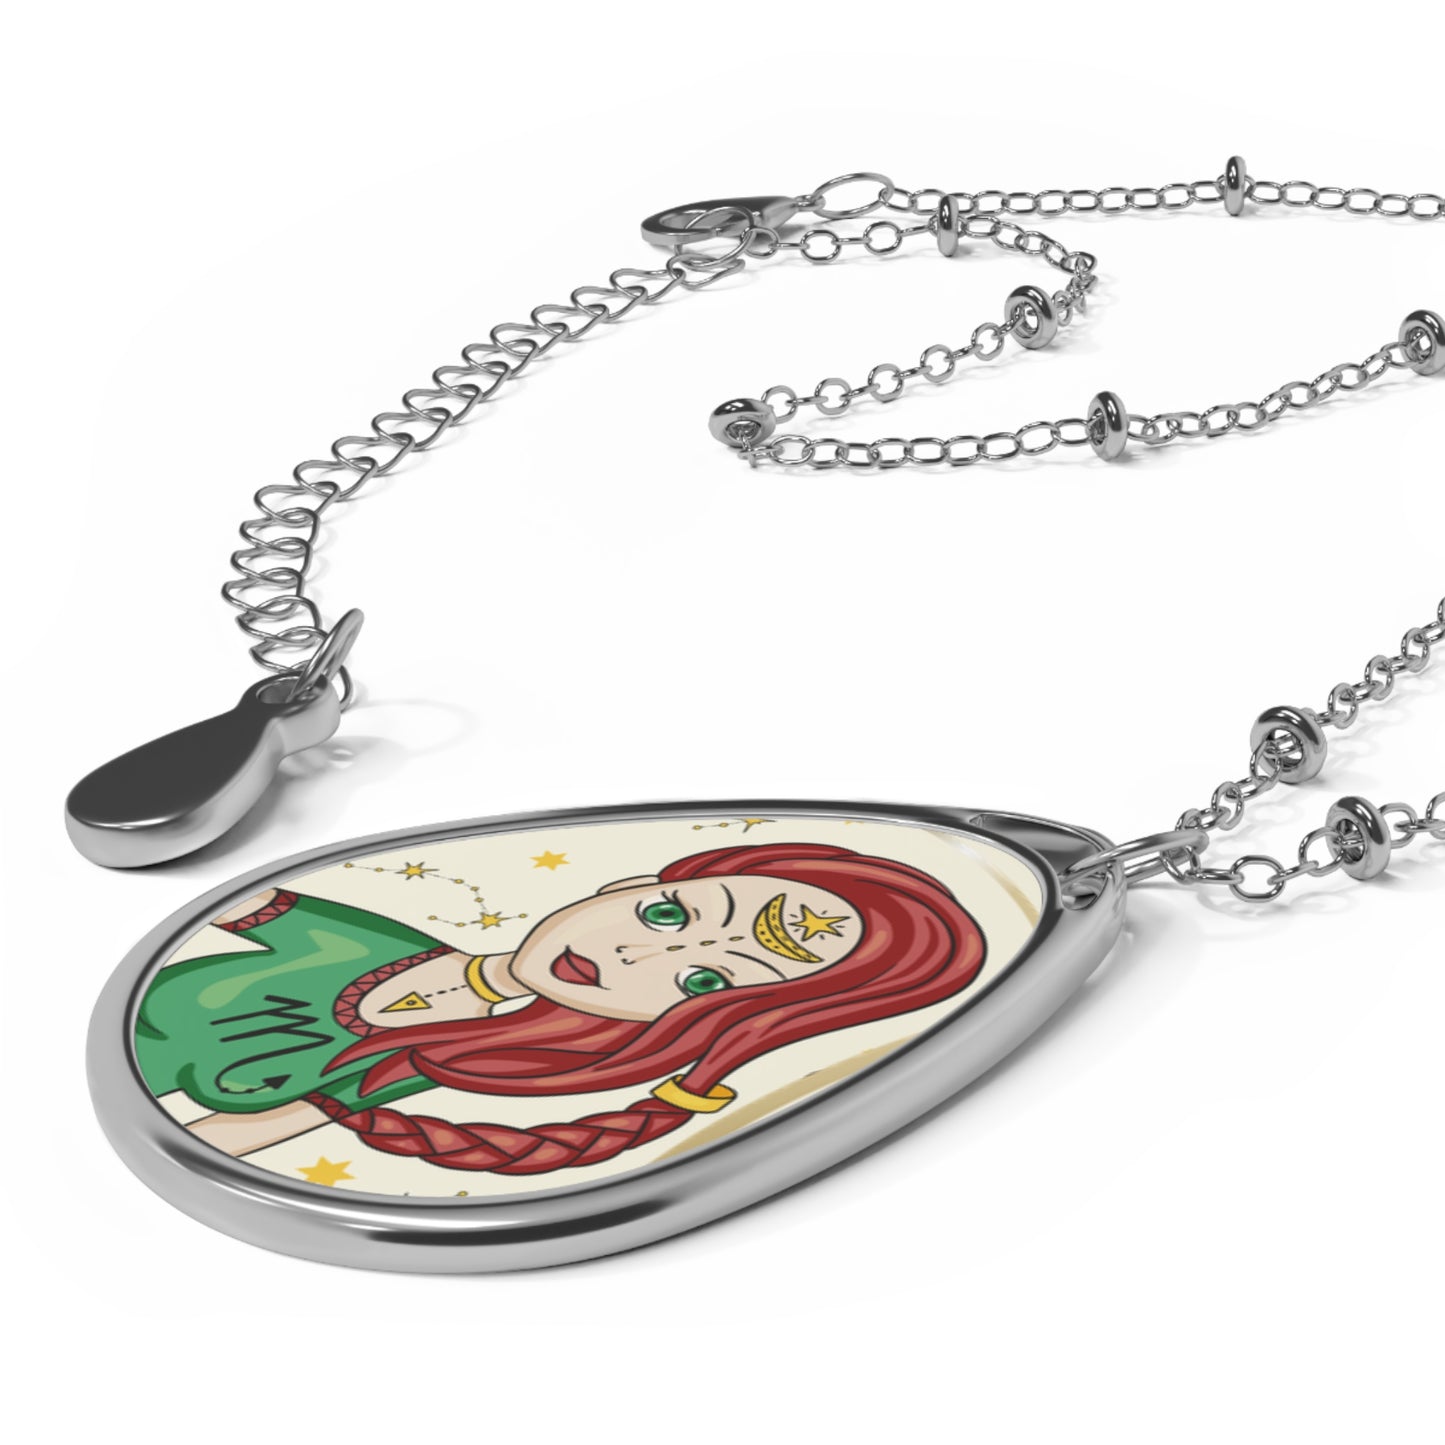 Scorpio Zodiac Sign ~ Scorpio Girl Illustration ~ Necklace & Oval Pendant With Chain